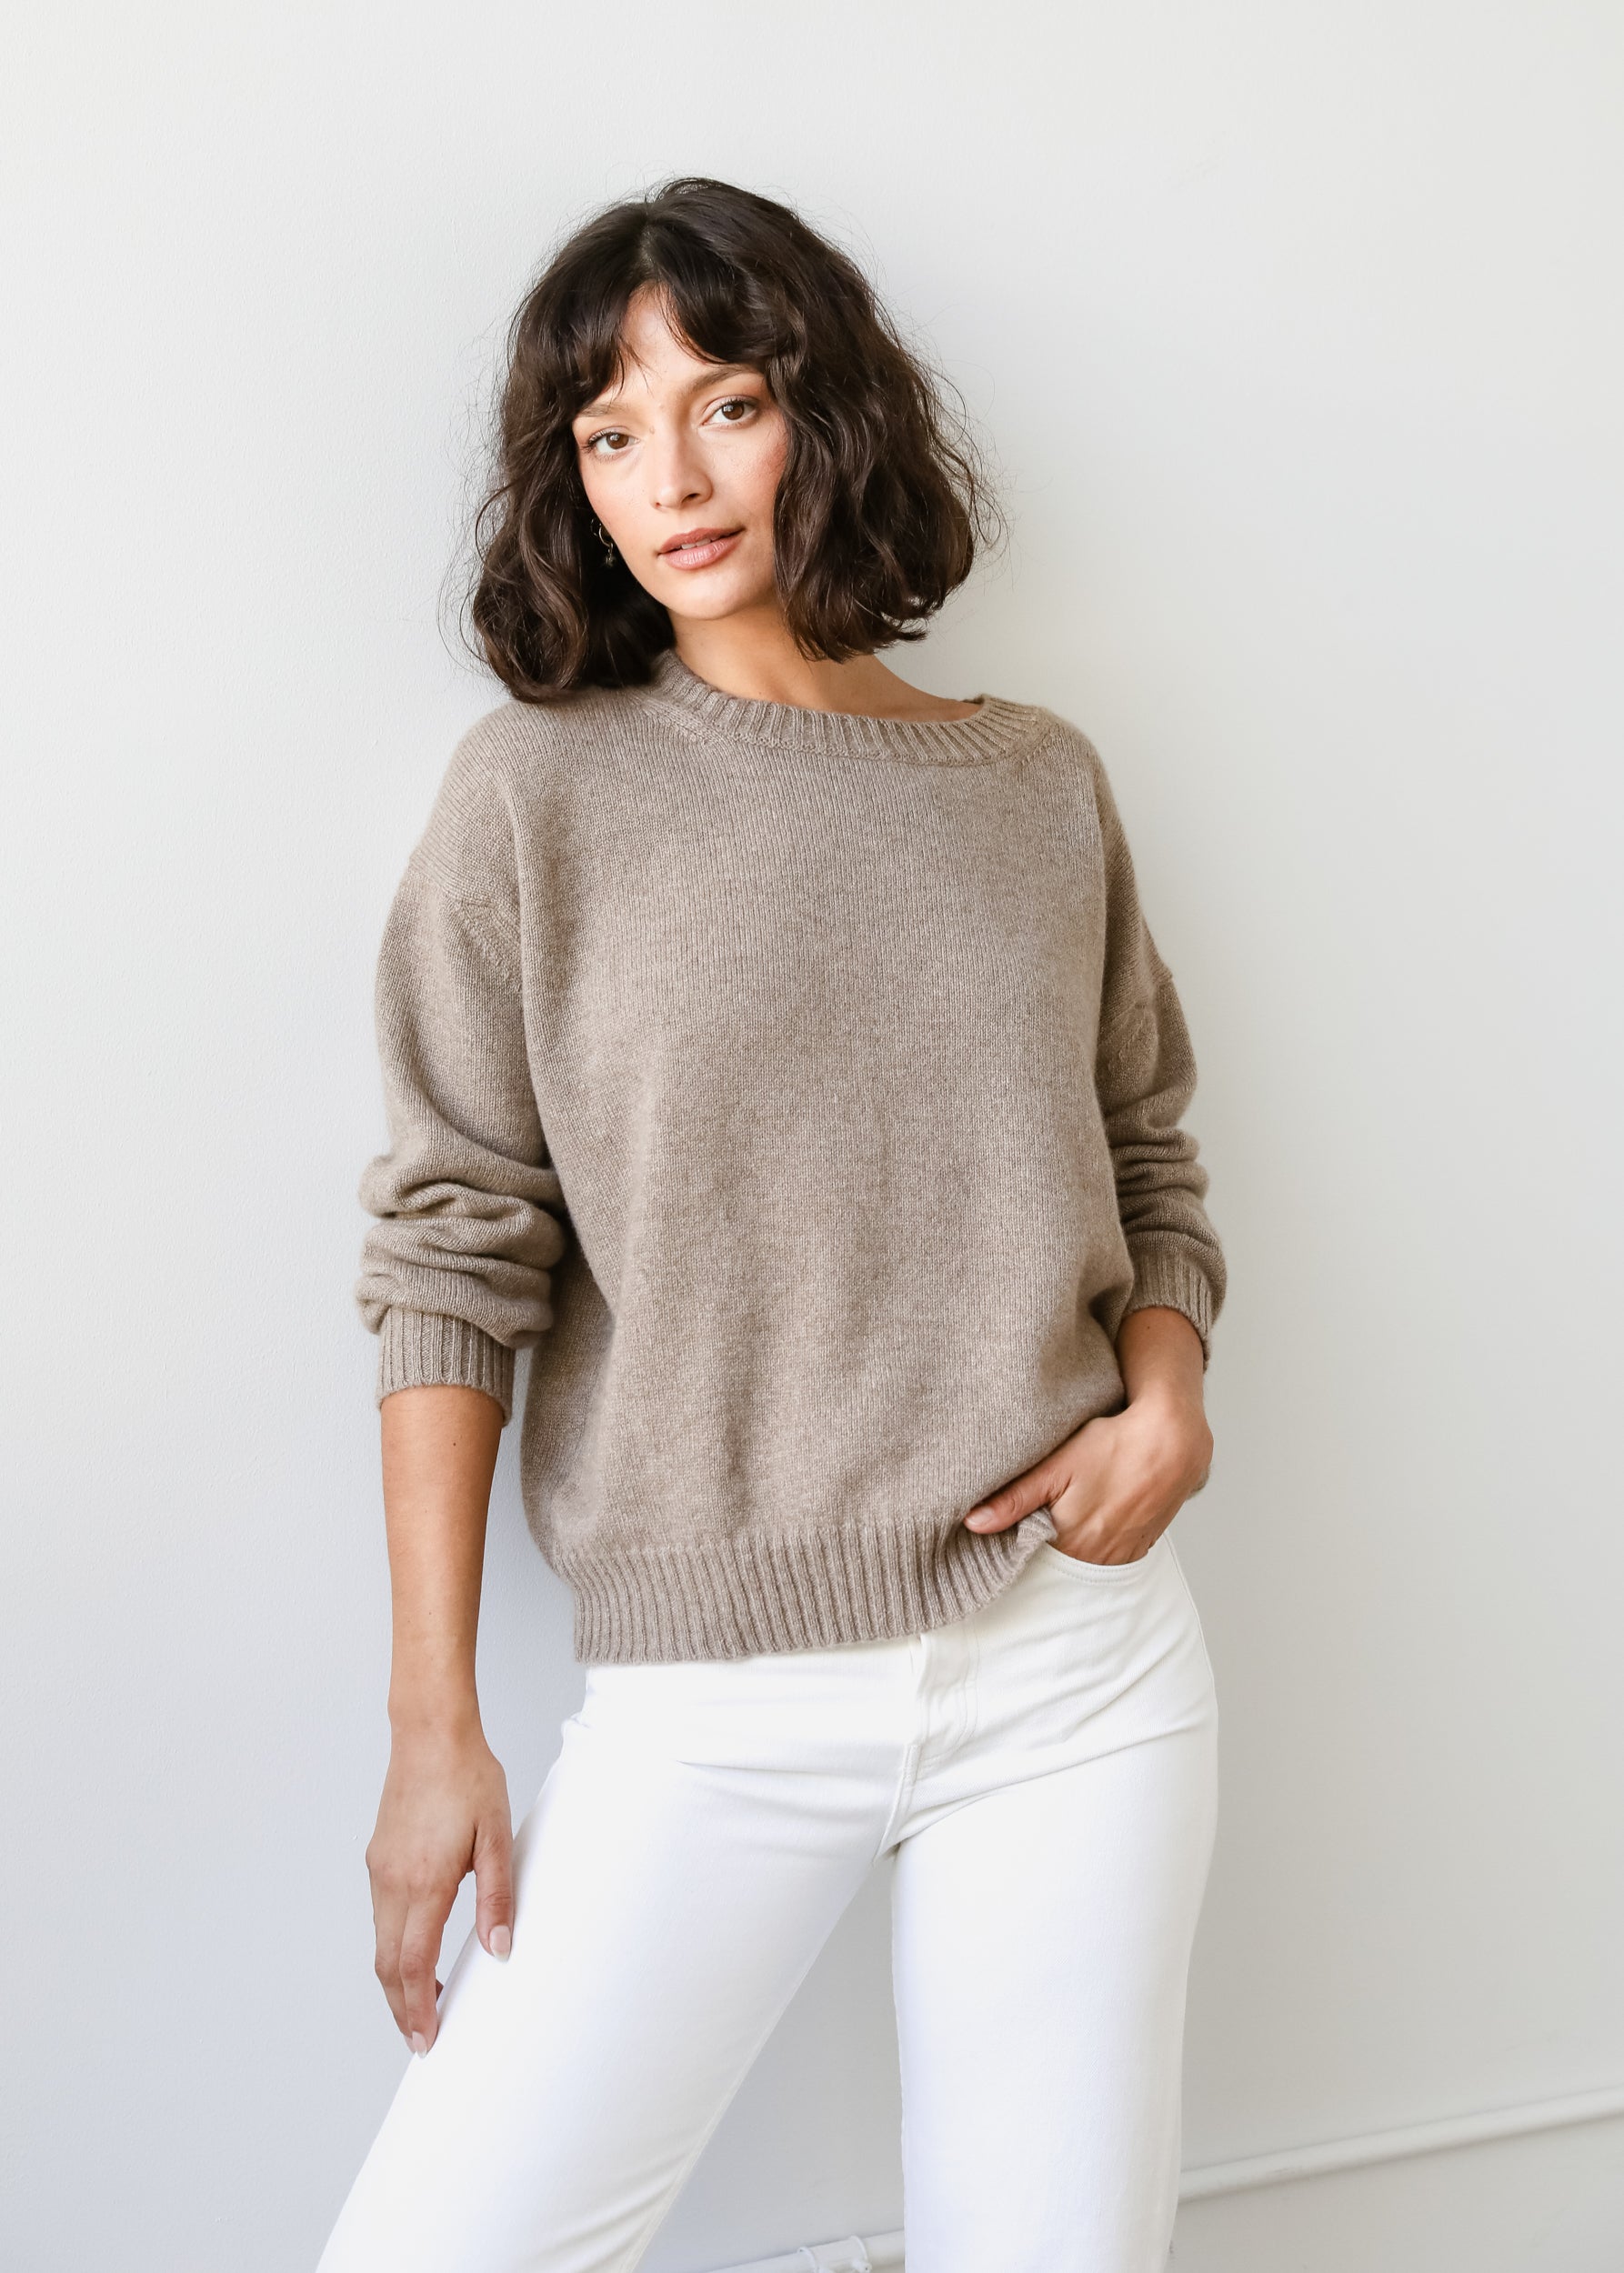 Estella NYC Fiorella Sweater in Brown Sugar Cashmere